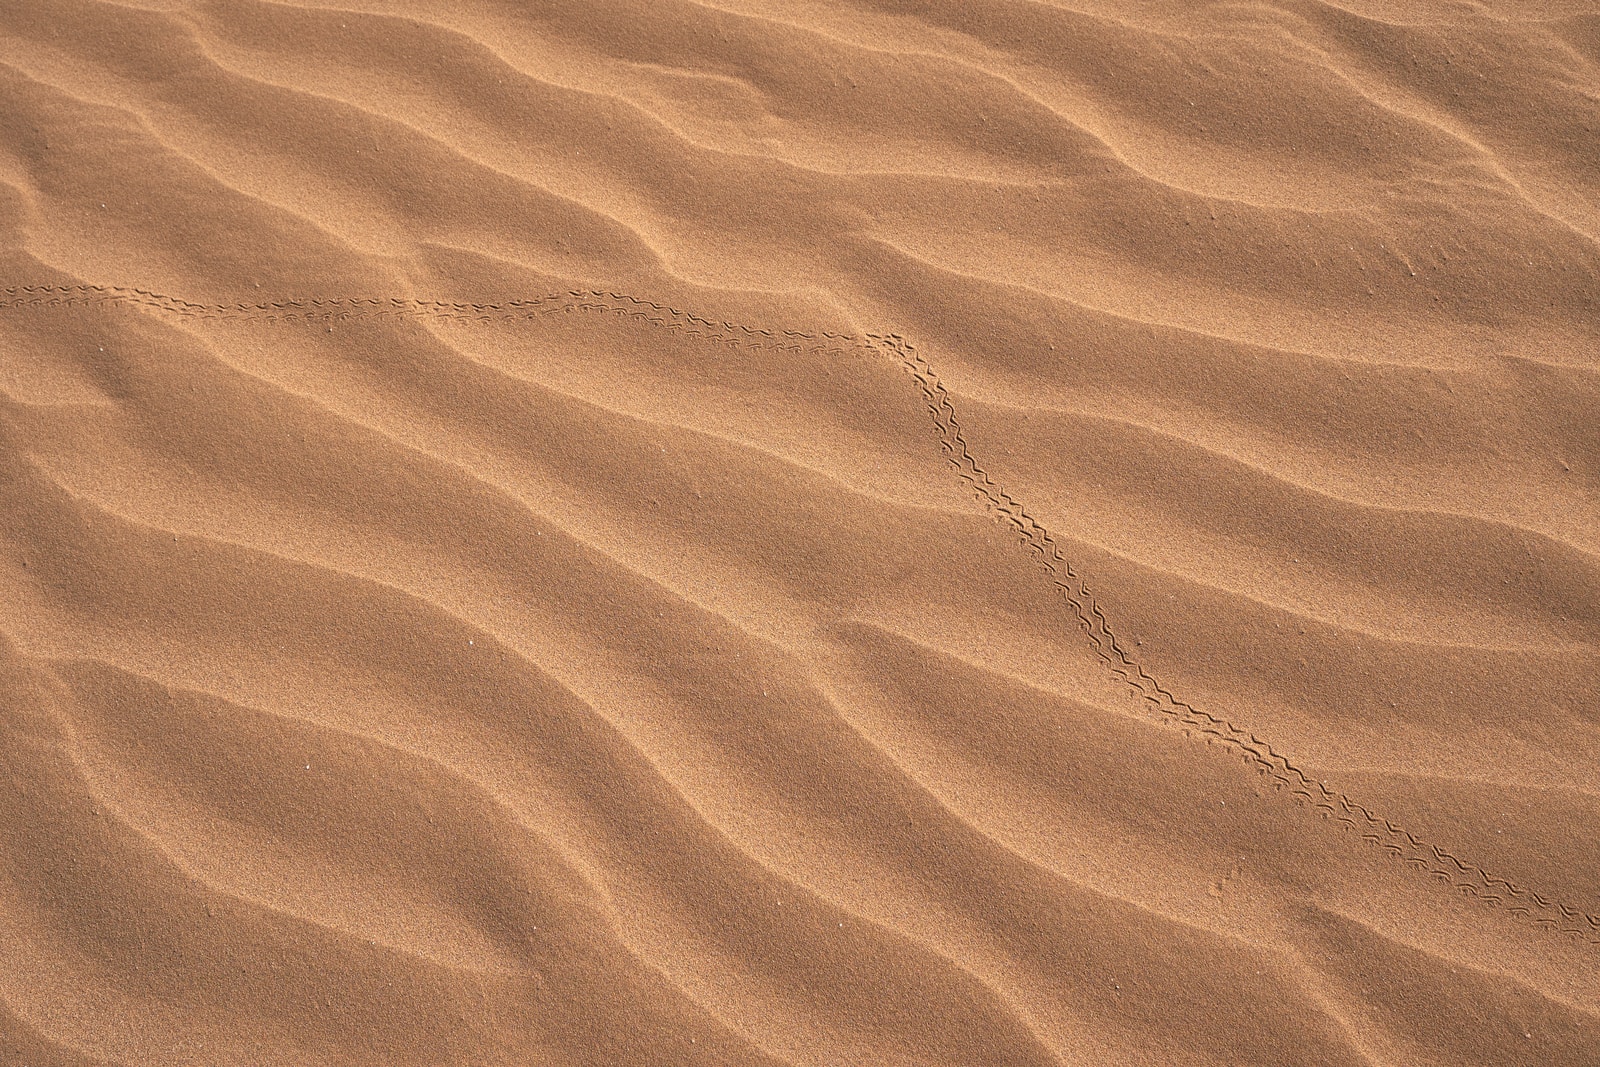 Wadi Rum desert sand dune